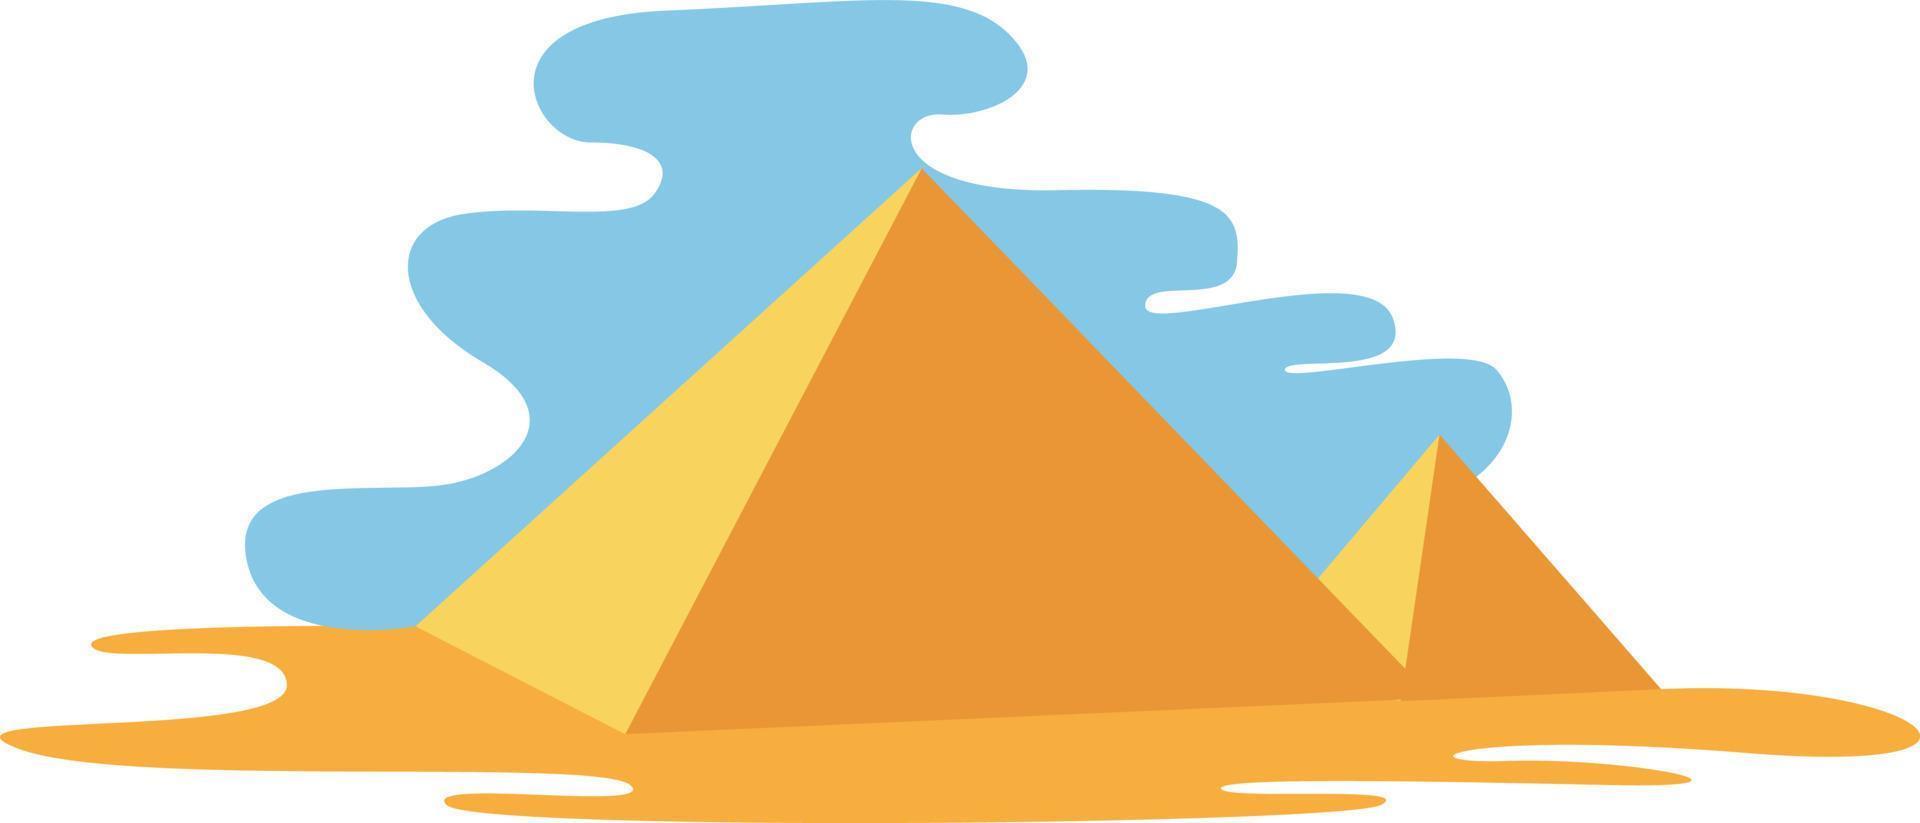 pirâmides, ilustração, vetor em fundo branco.